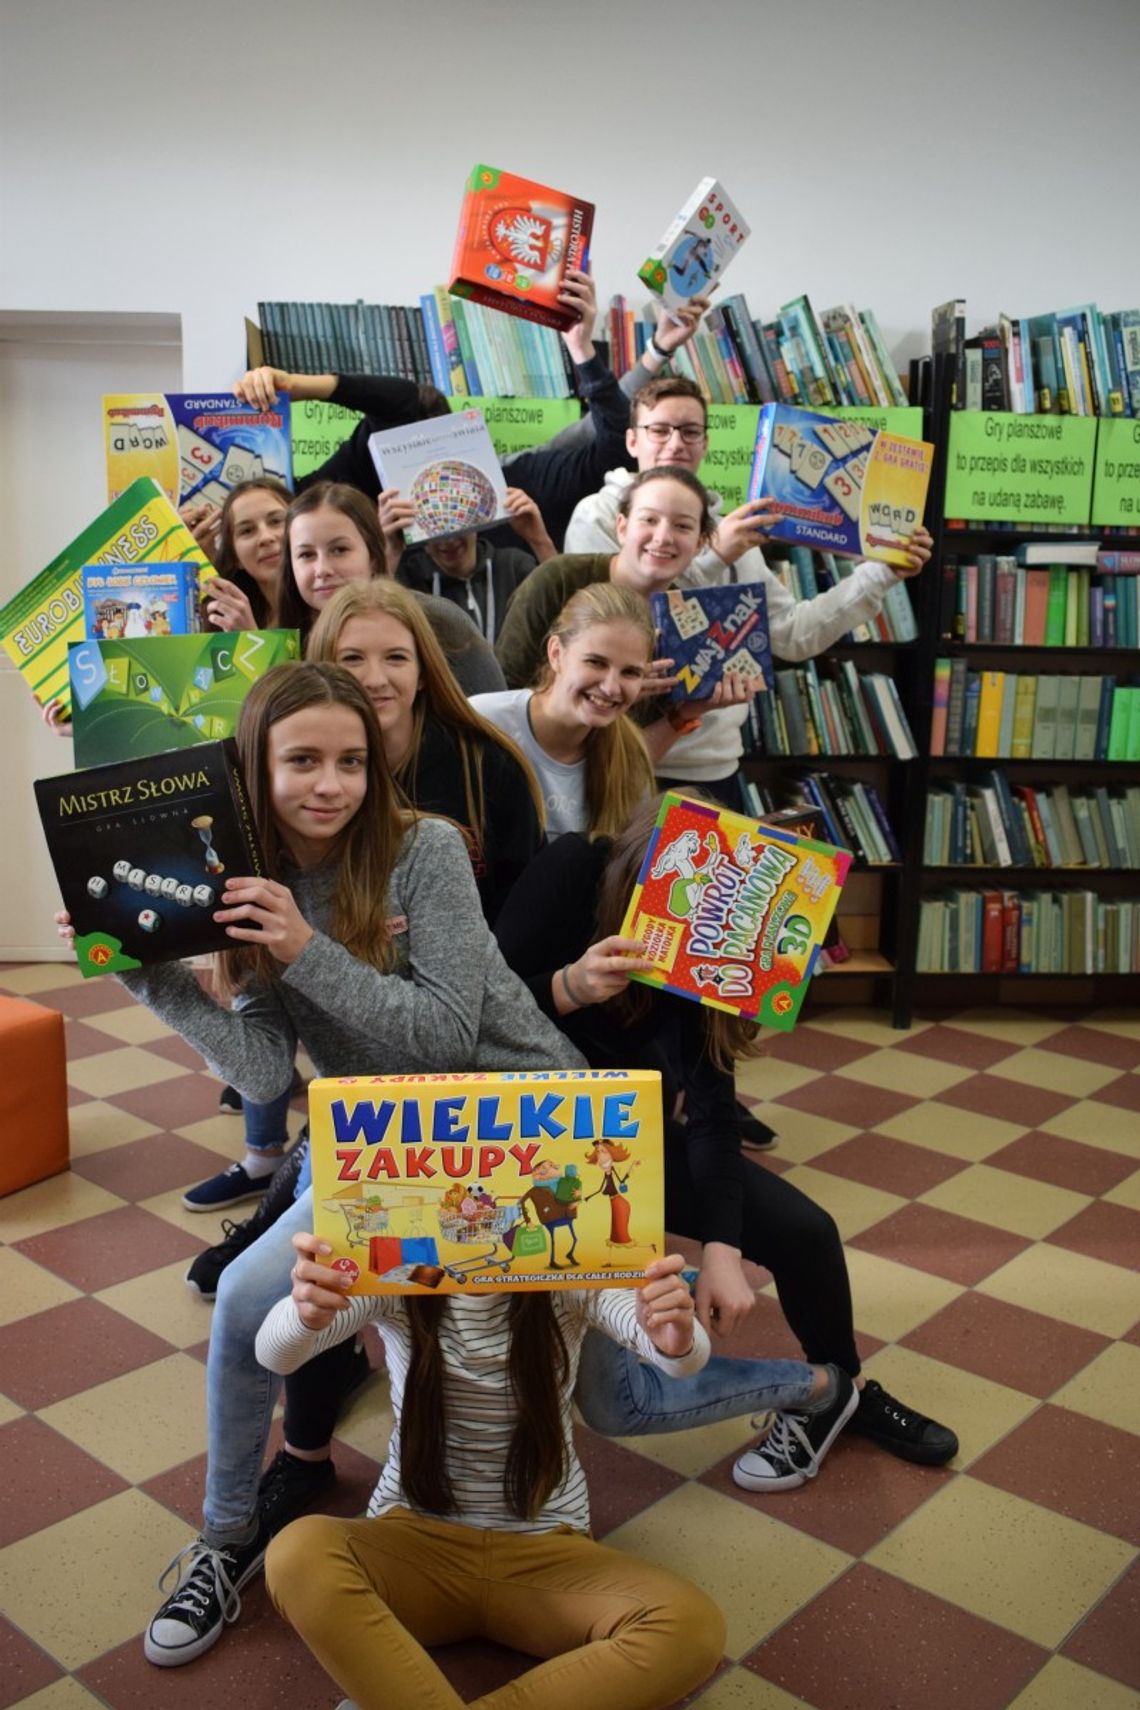 Aleksandrów: Książnica nagrodzona w konkursie "Zgrana biblioteka"